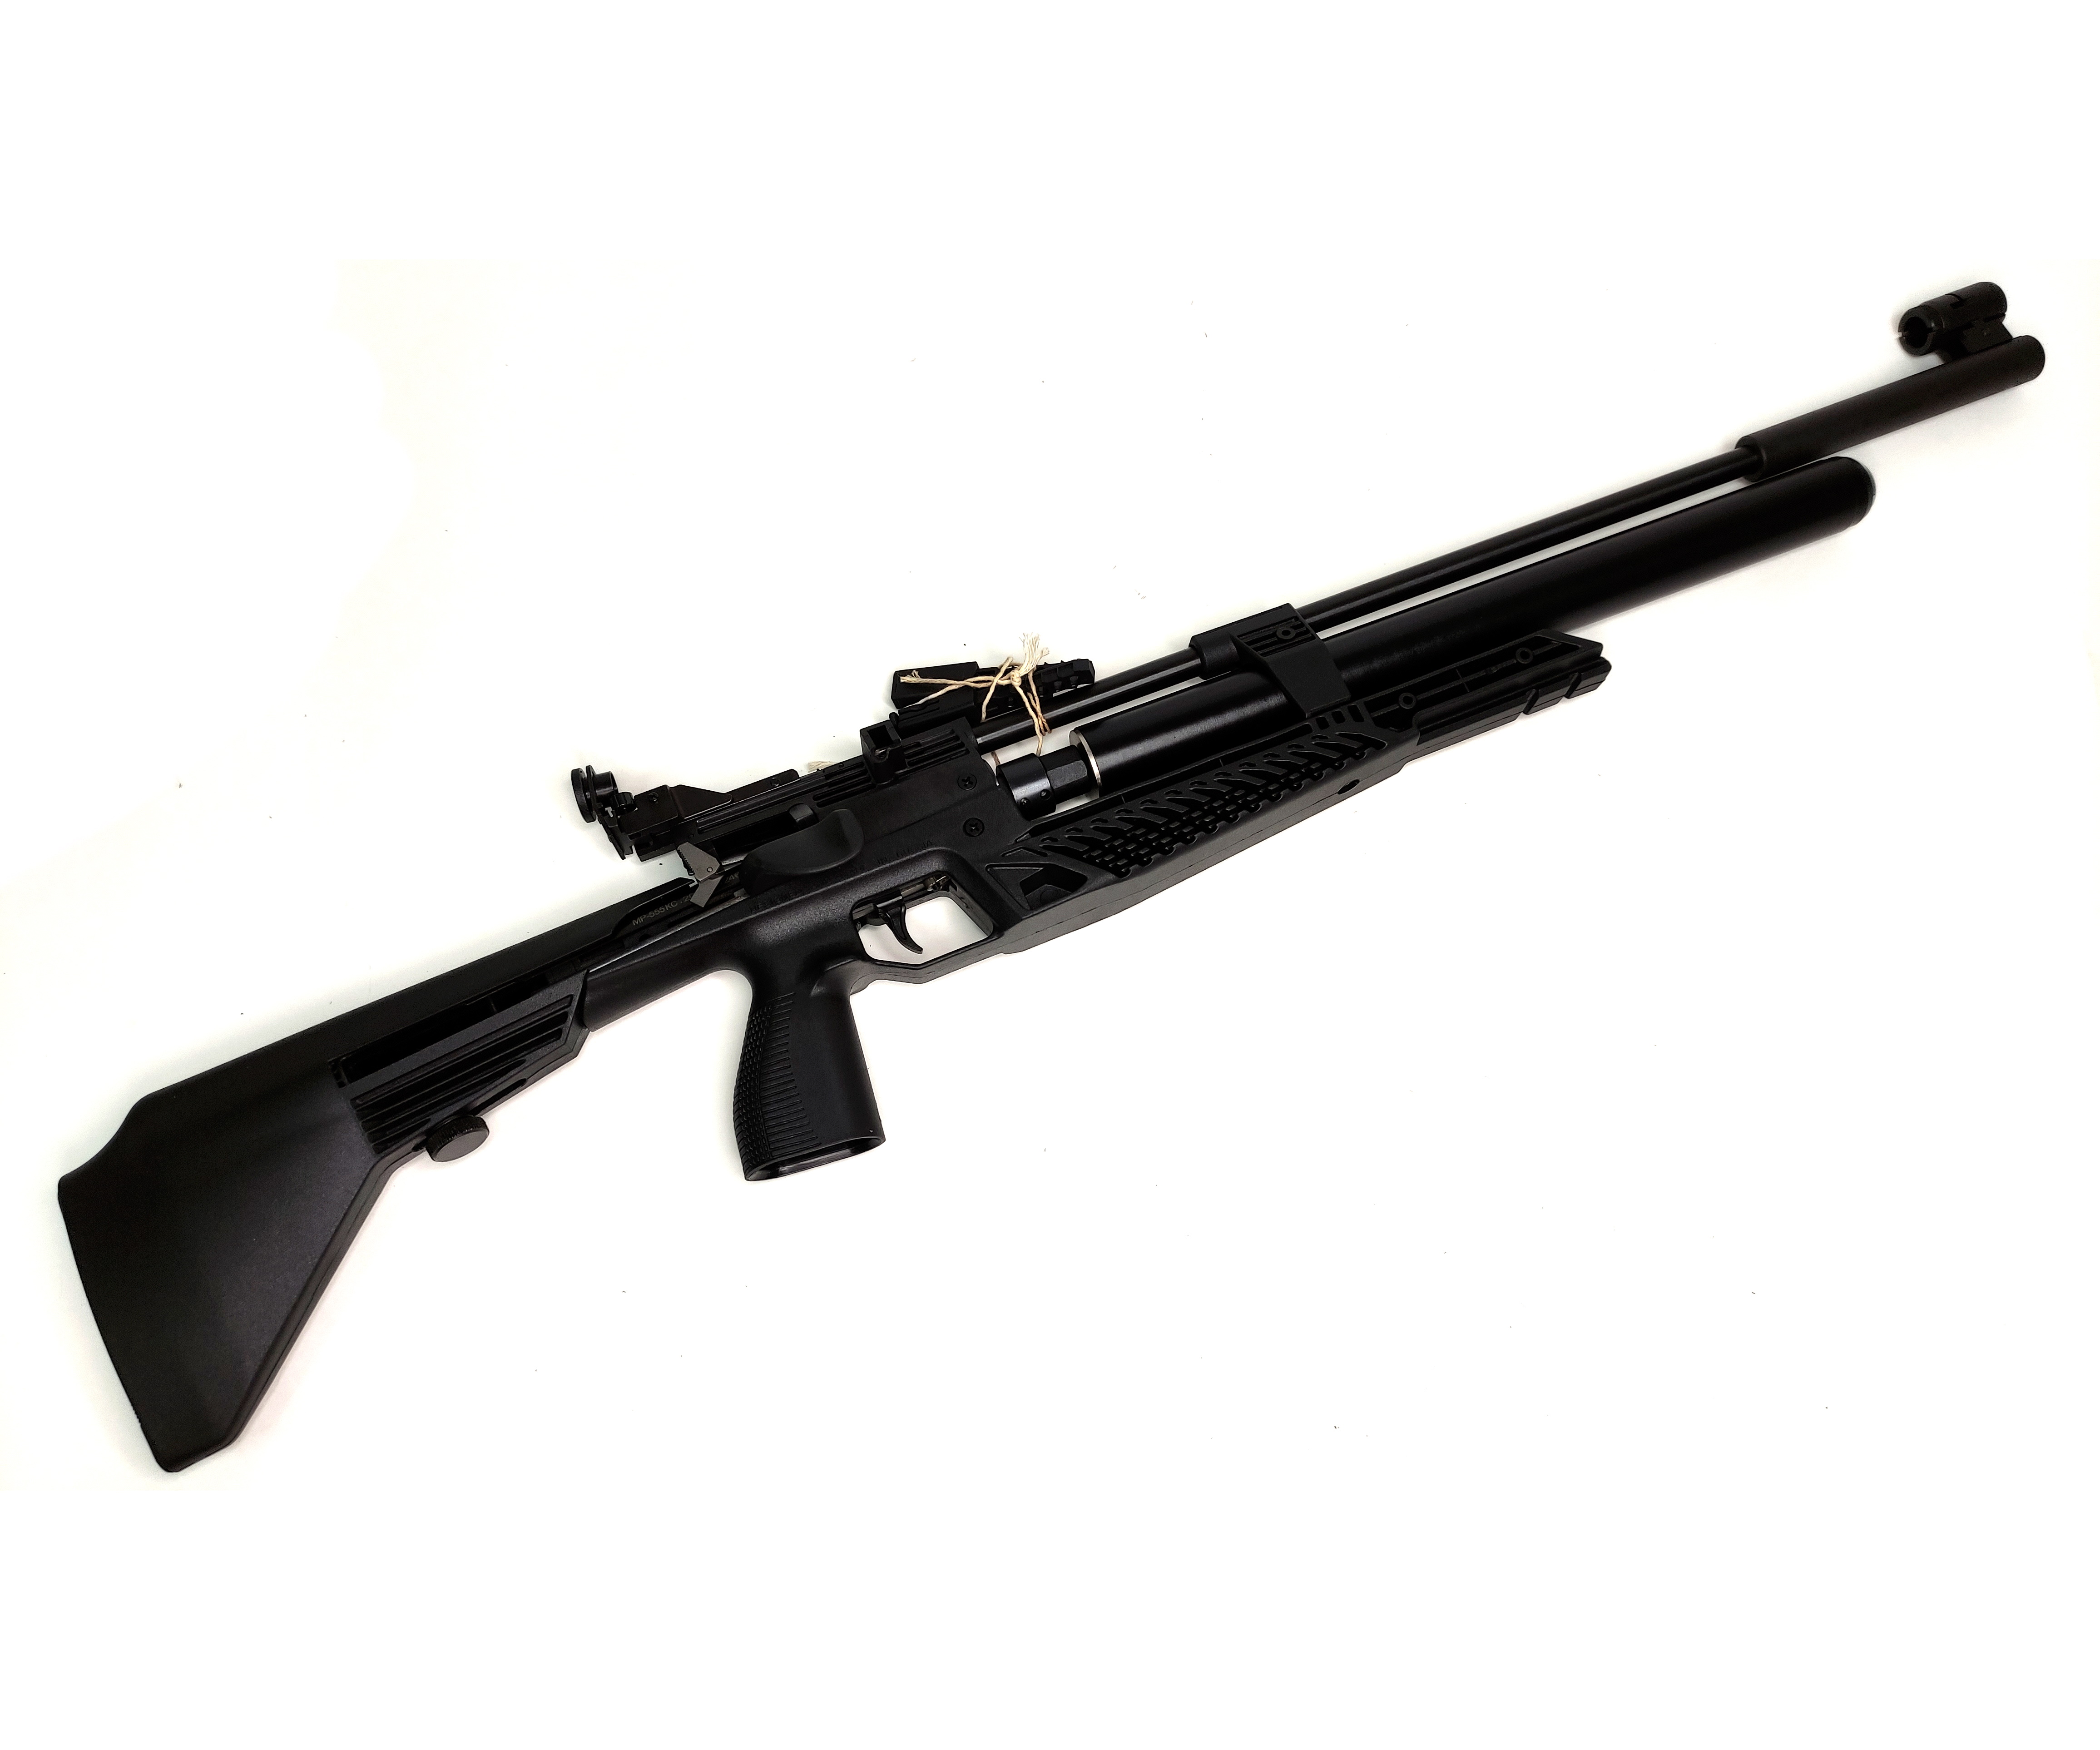 Пневмат 3 дж. Пневматическая винтовка Baikal МР-555кс. Пневматическая винтовка МР-555кс-03 4,5 мм. Пневматическая винтовка МР-555кс-03 4.5. Пневматическая винтовка Baikal МР-555кс-03 (PCP).